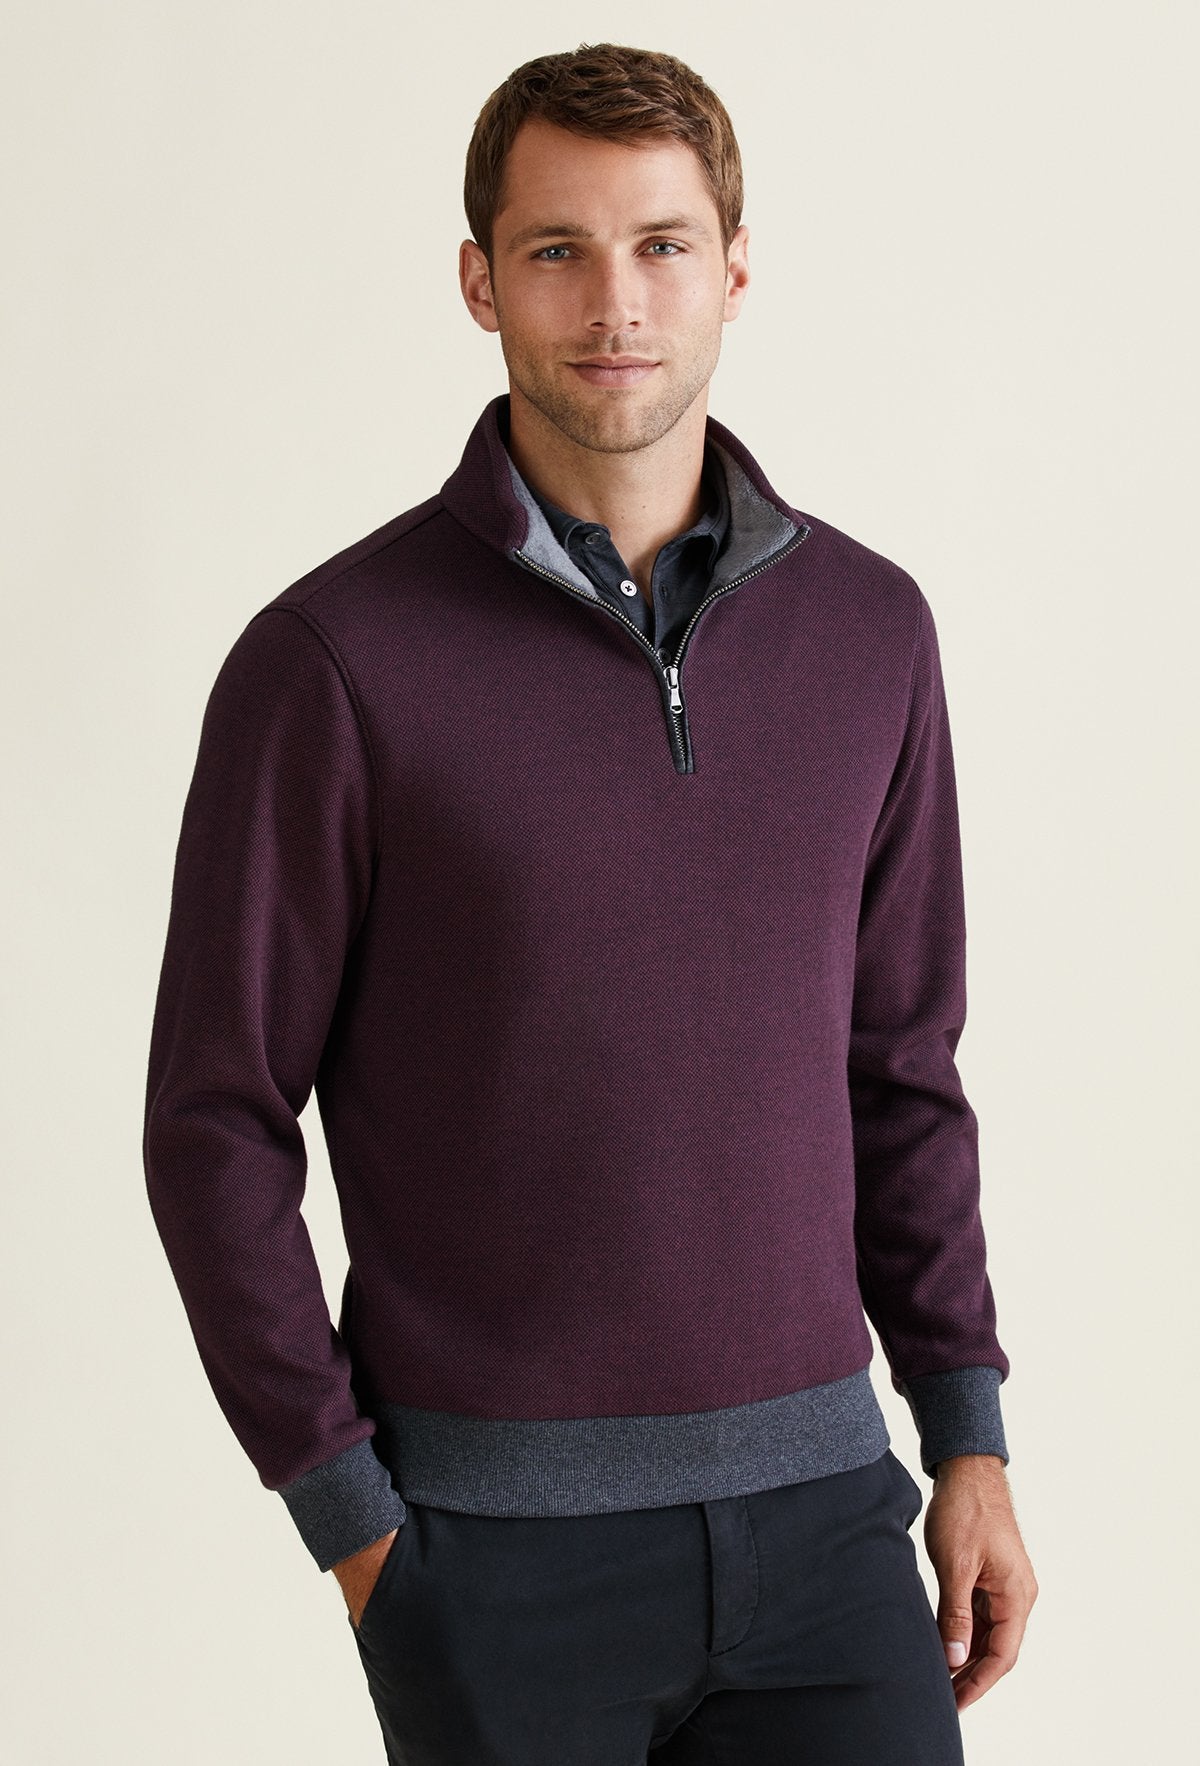 quarter zip pullover mens sweater